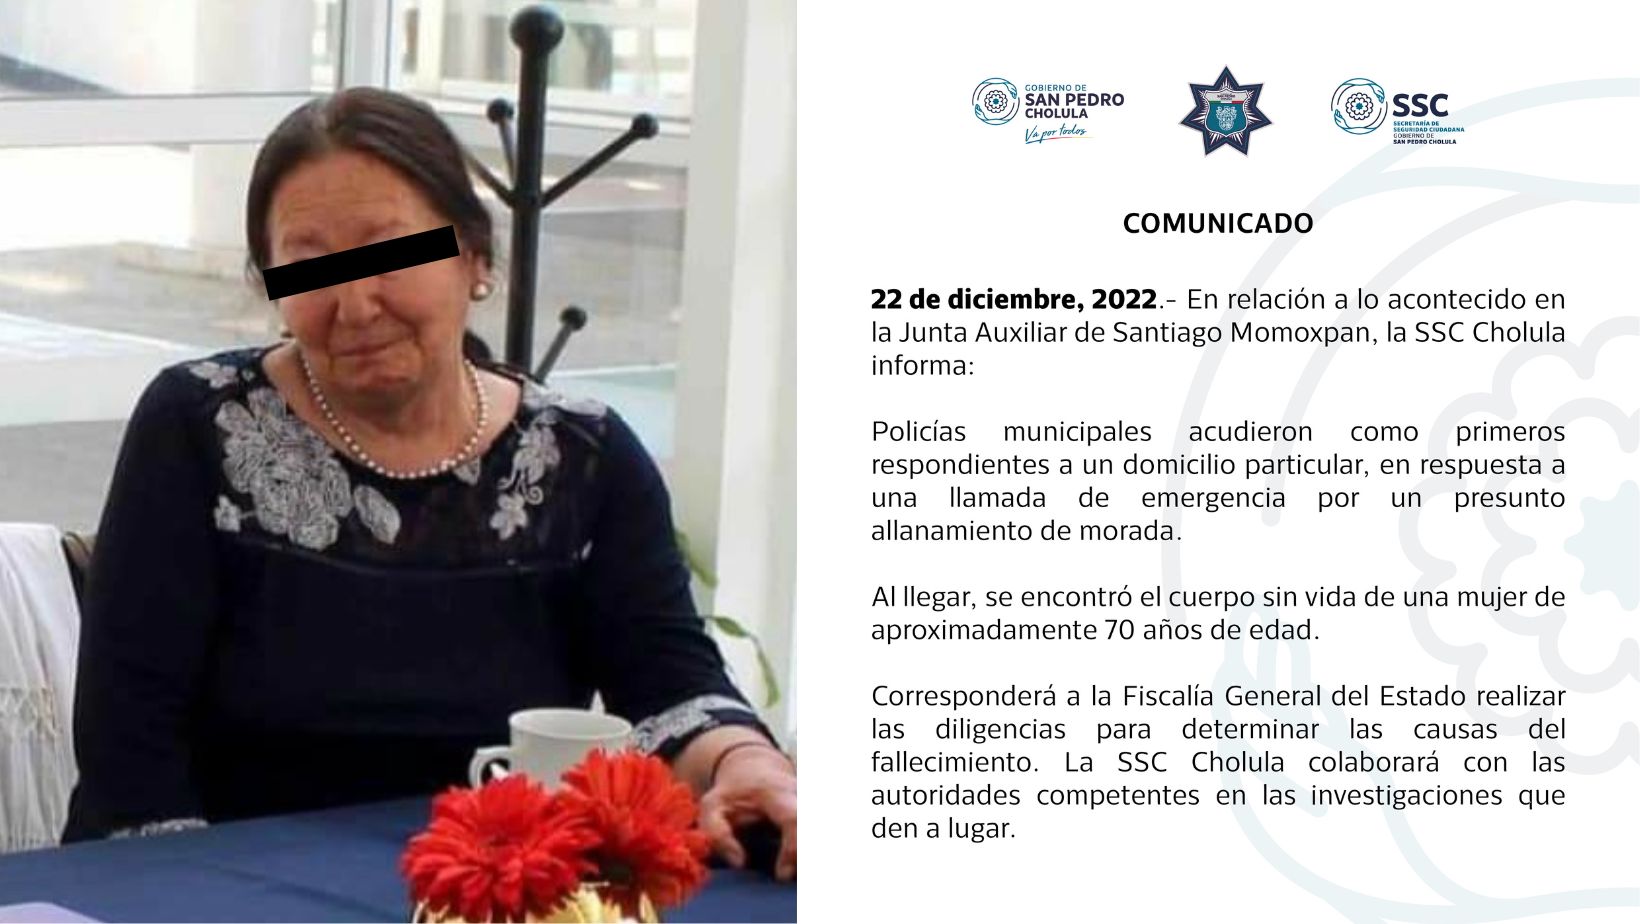 La maestra fue encontrada sin vida y con signos de violencia, al interior de su domicilio en Santiago Momoxpan, perteneciente a San Pedro Cholula, Puebla.
(@SSC_Cholula)